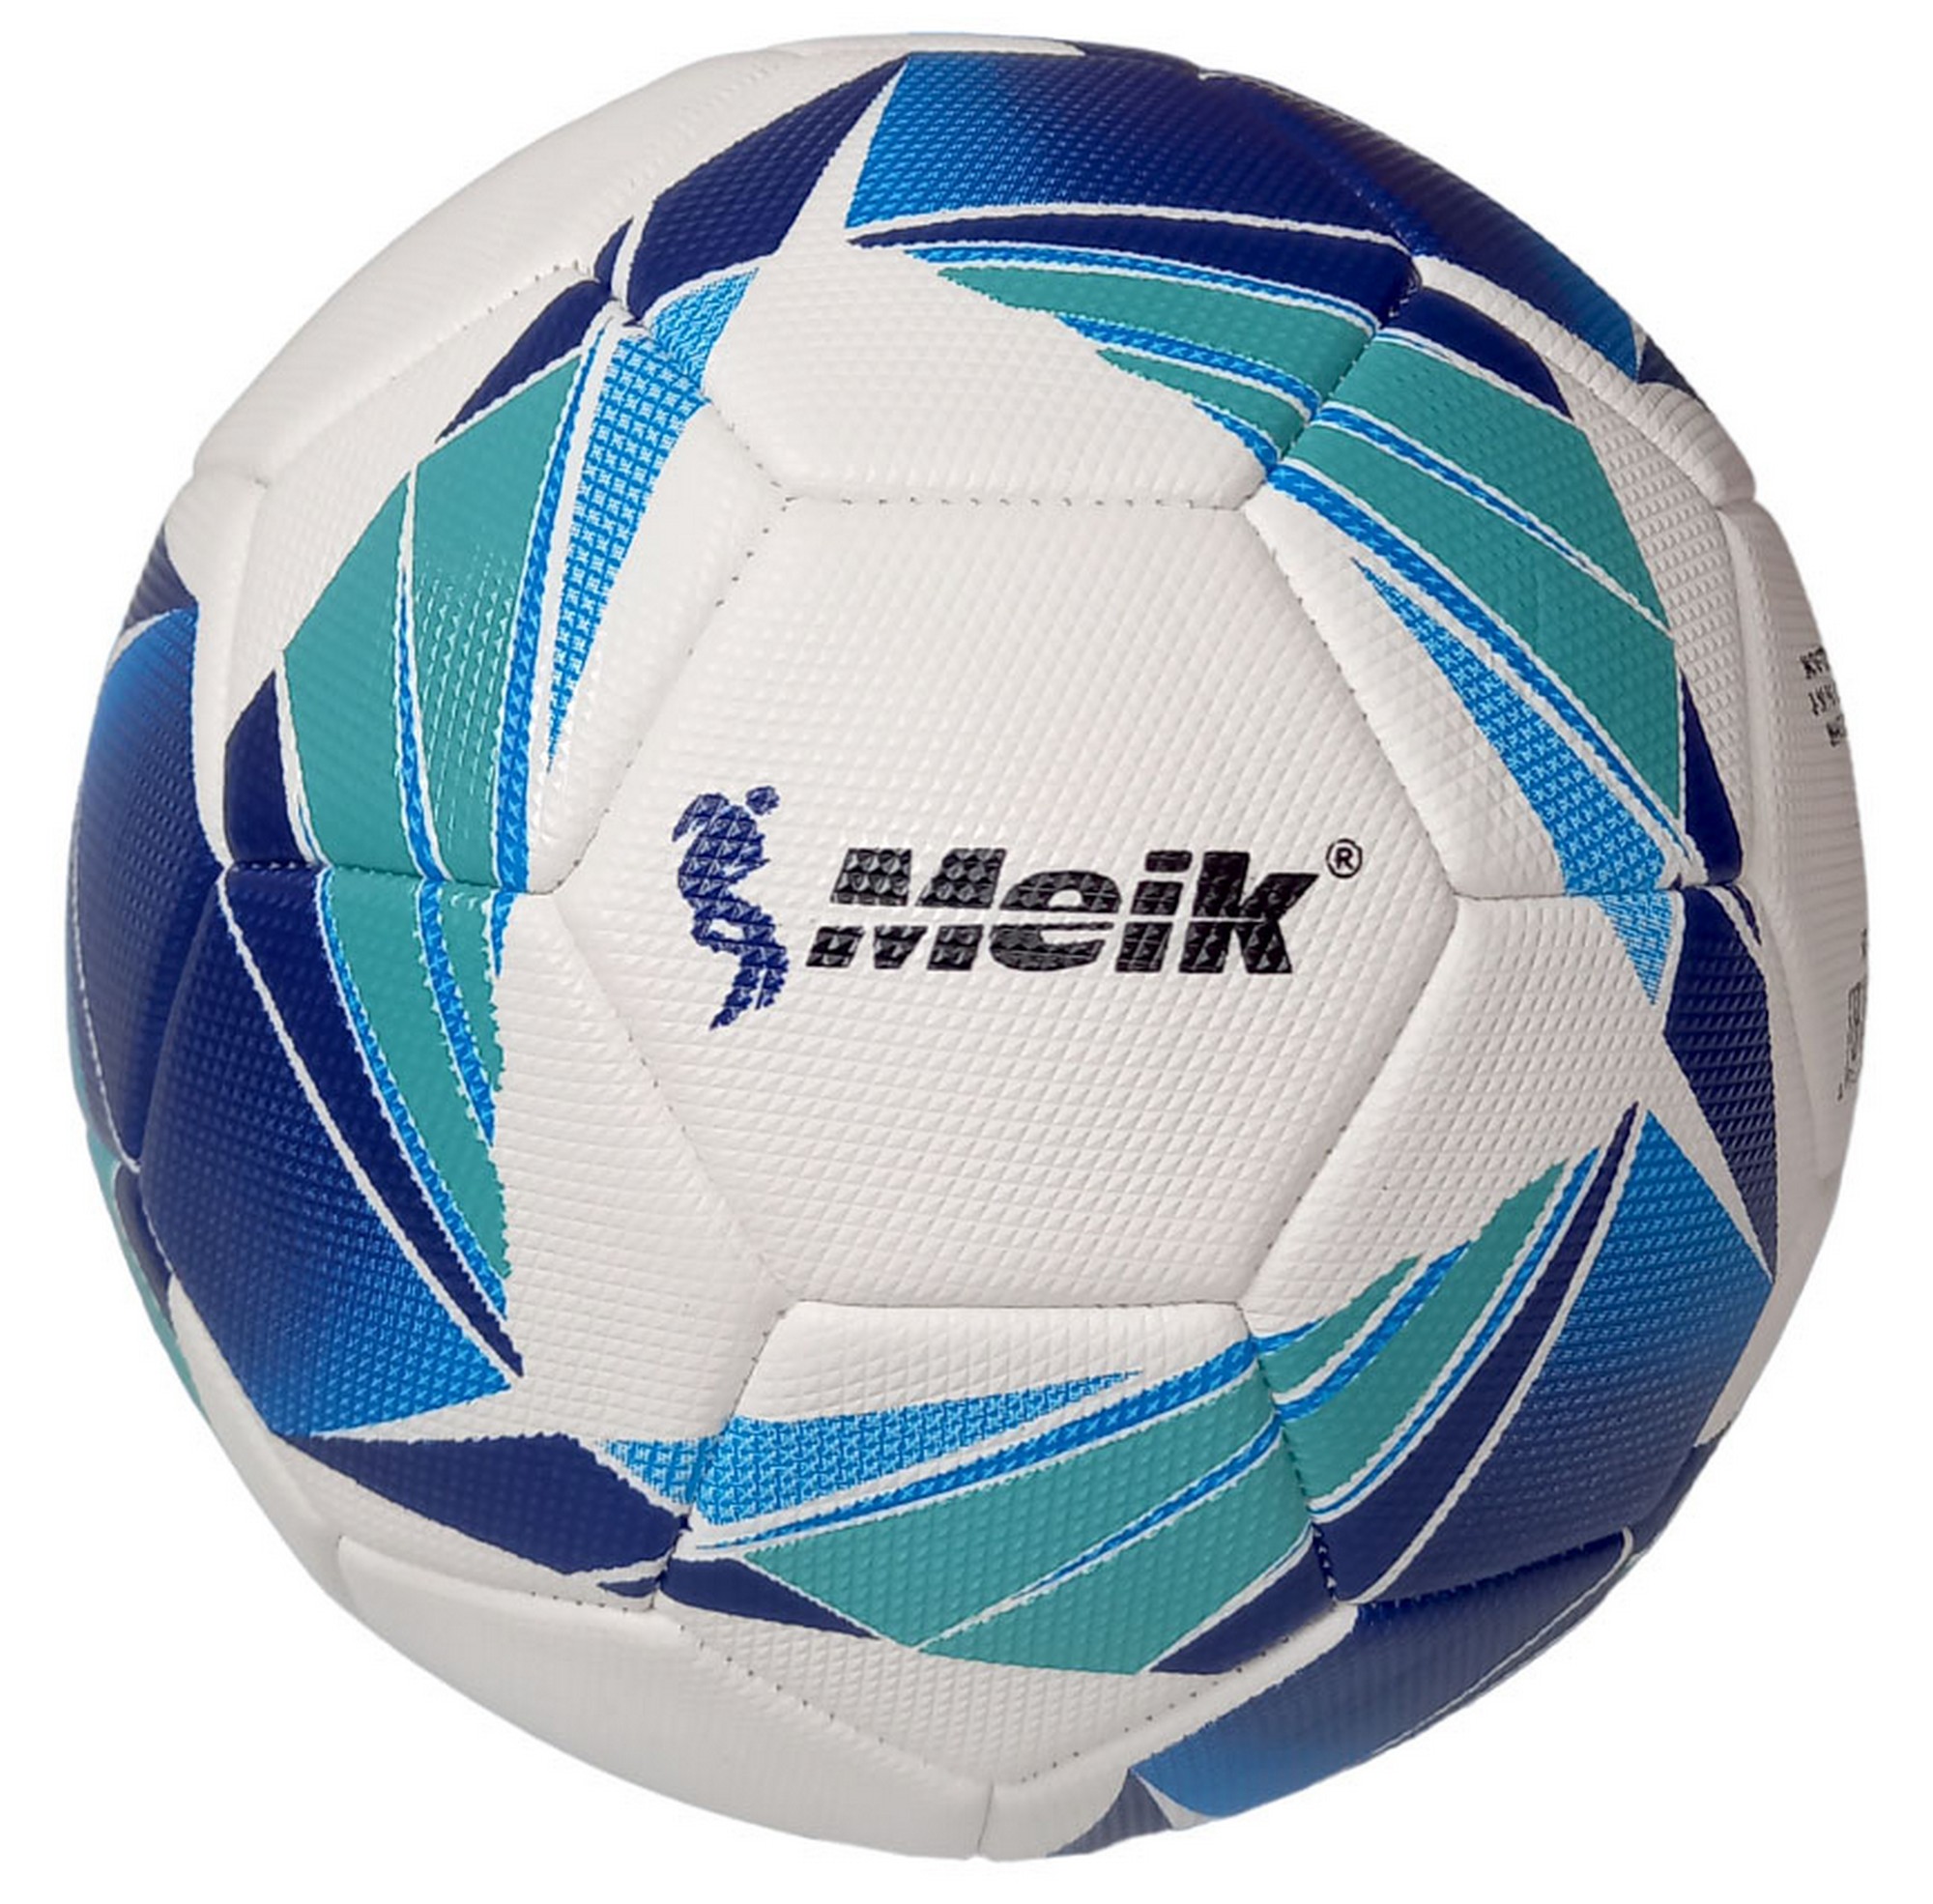 Мяч футбольный Meik E40792-3 р.5